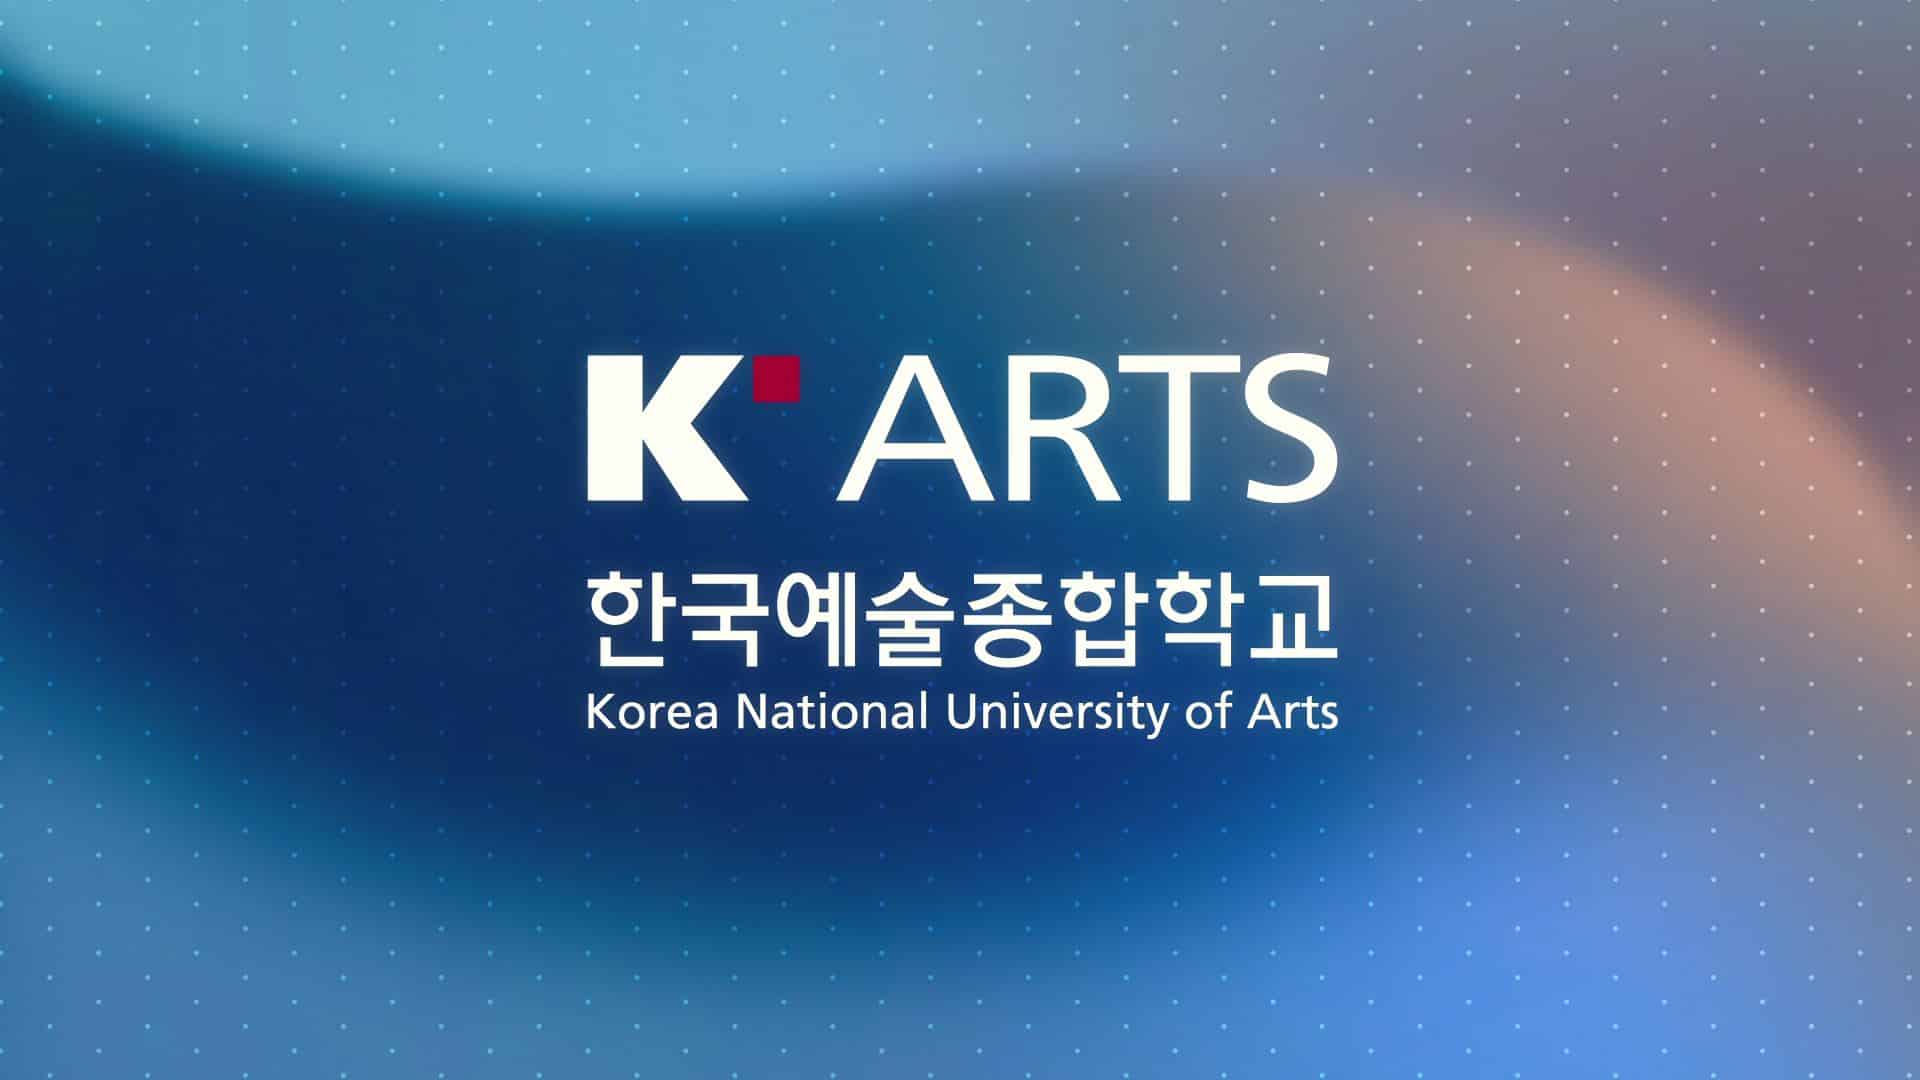 한국종합예술학교 연혁 모션그래픽 영상